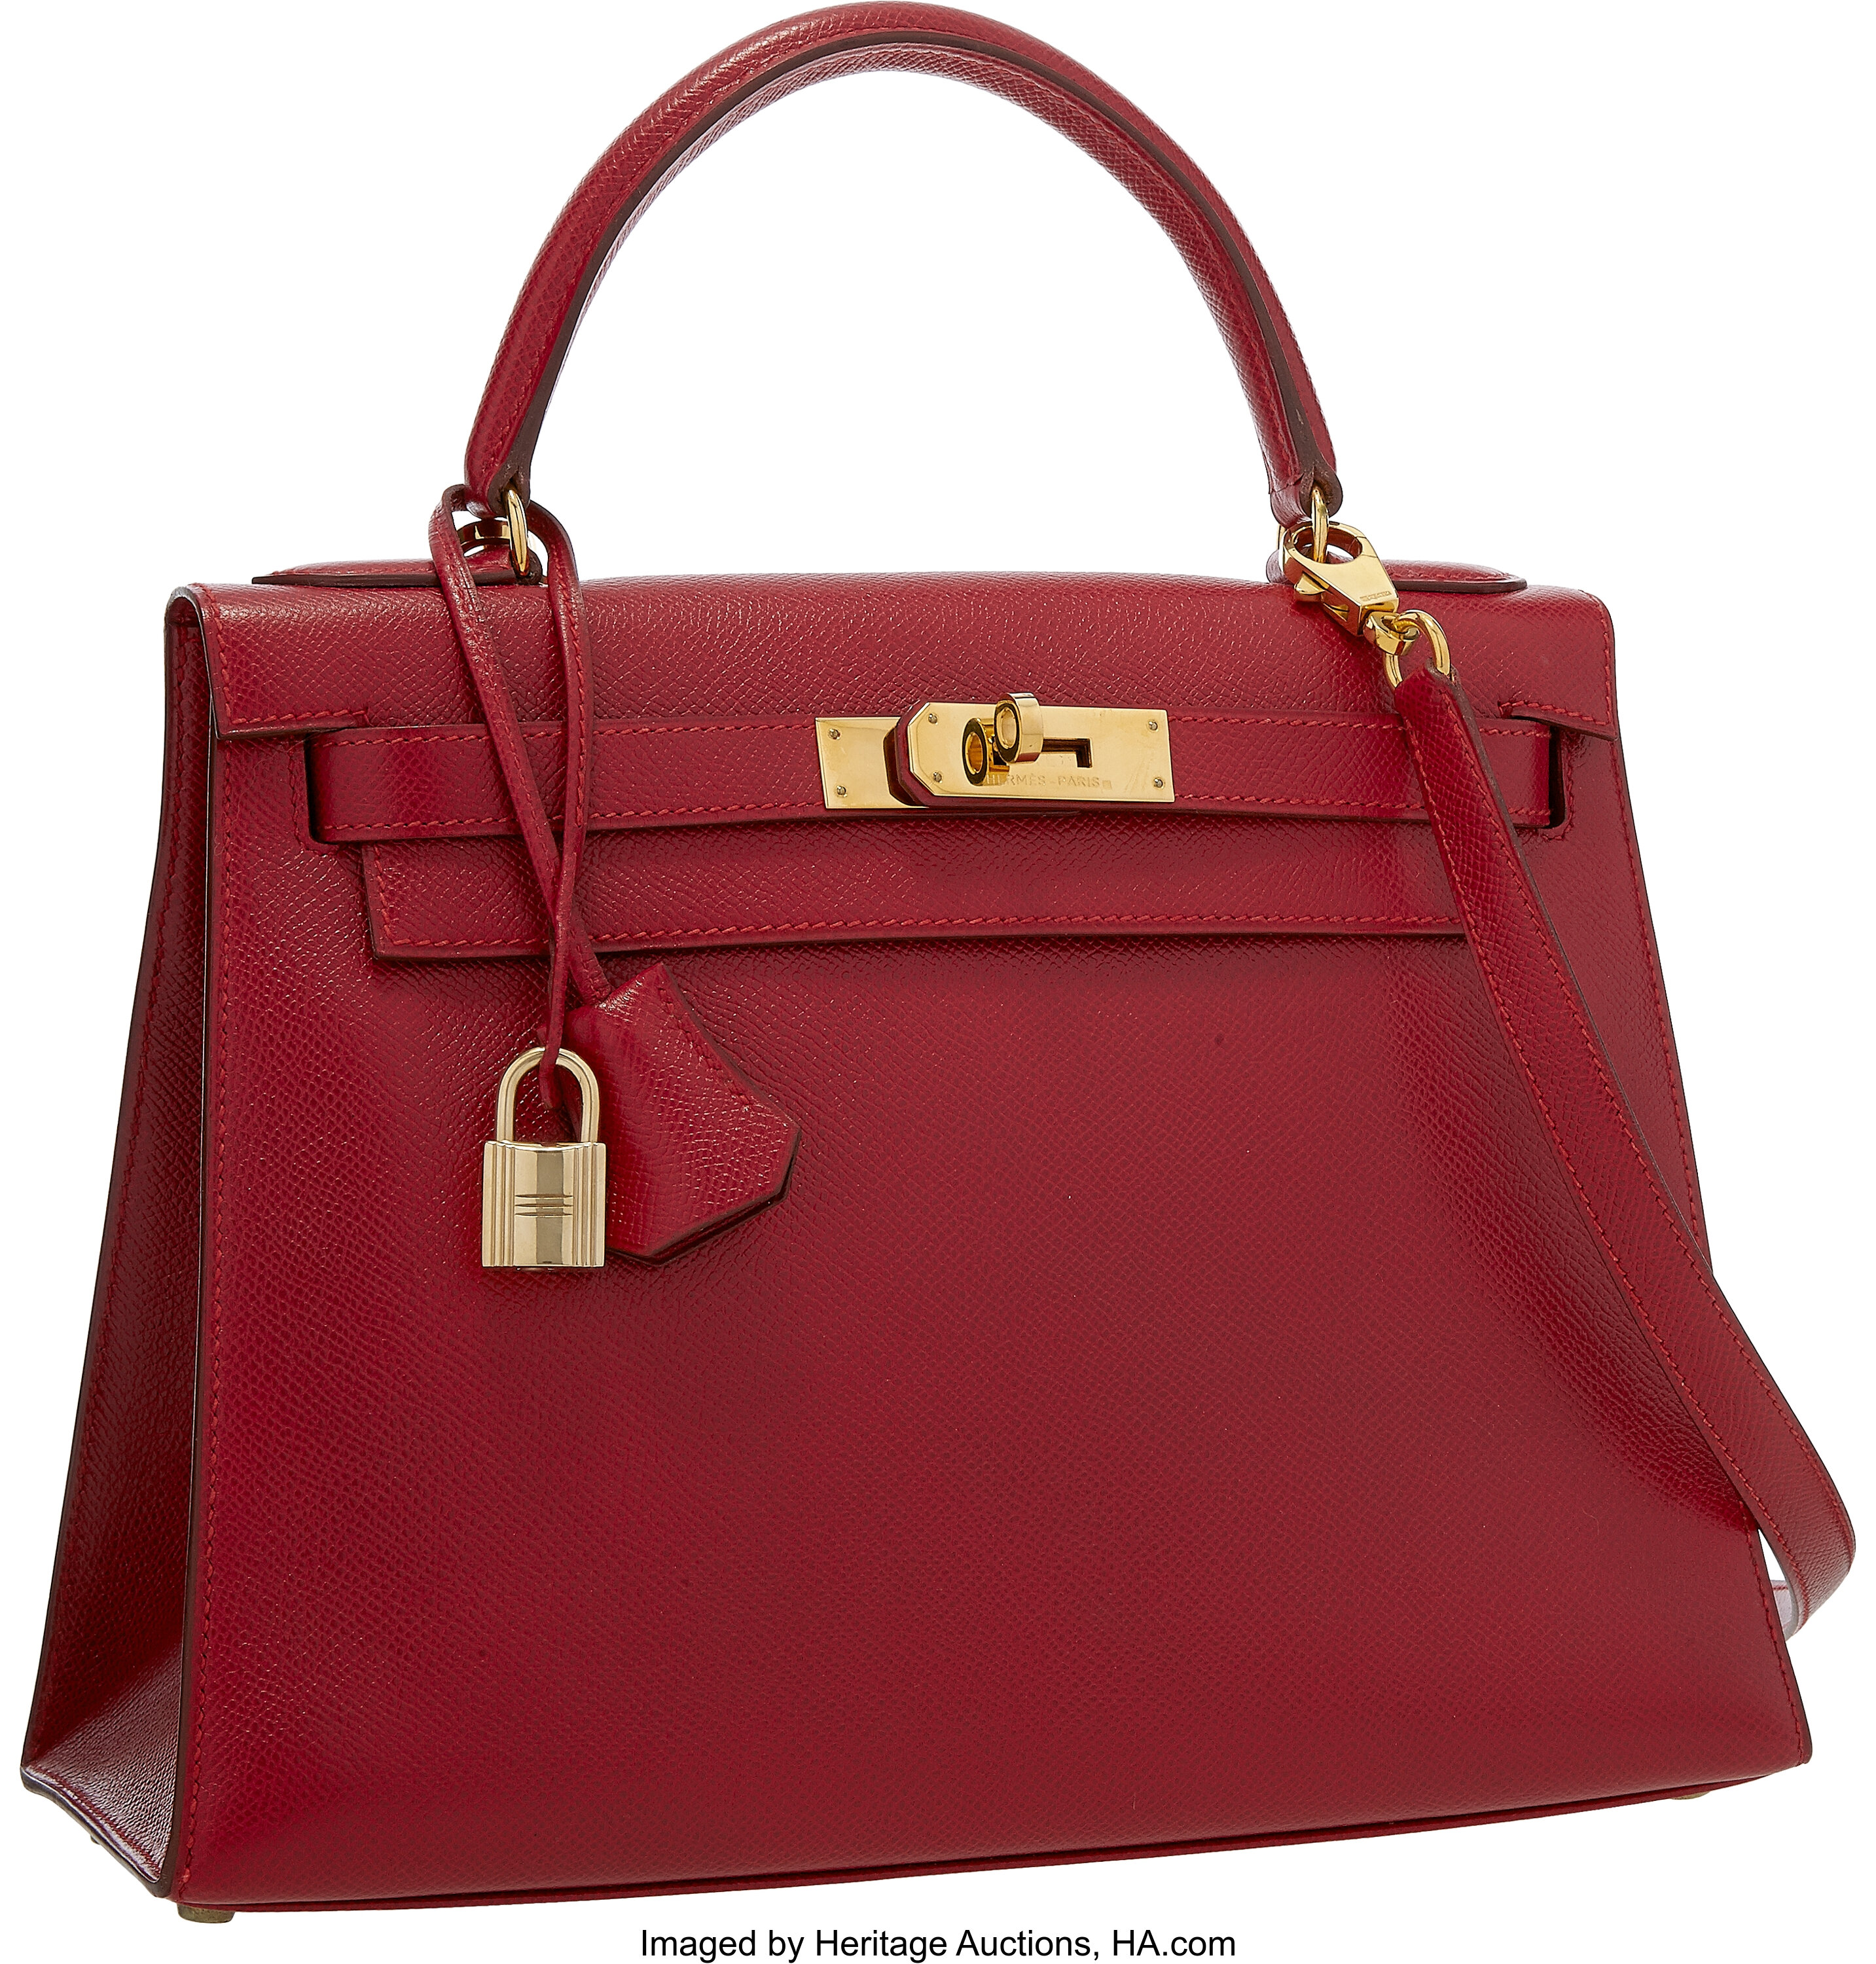 Kelly Rouge 25cm - Bags Of Luxury